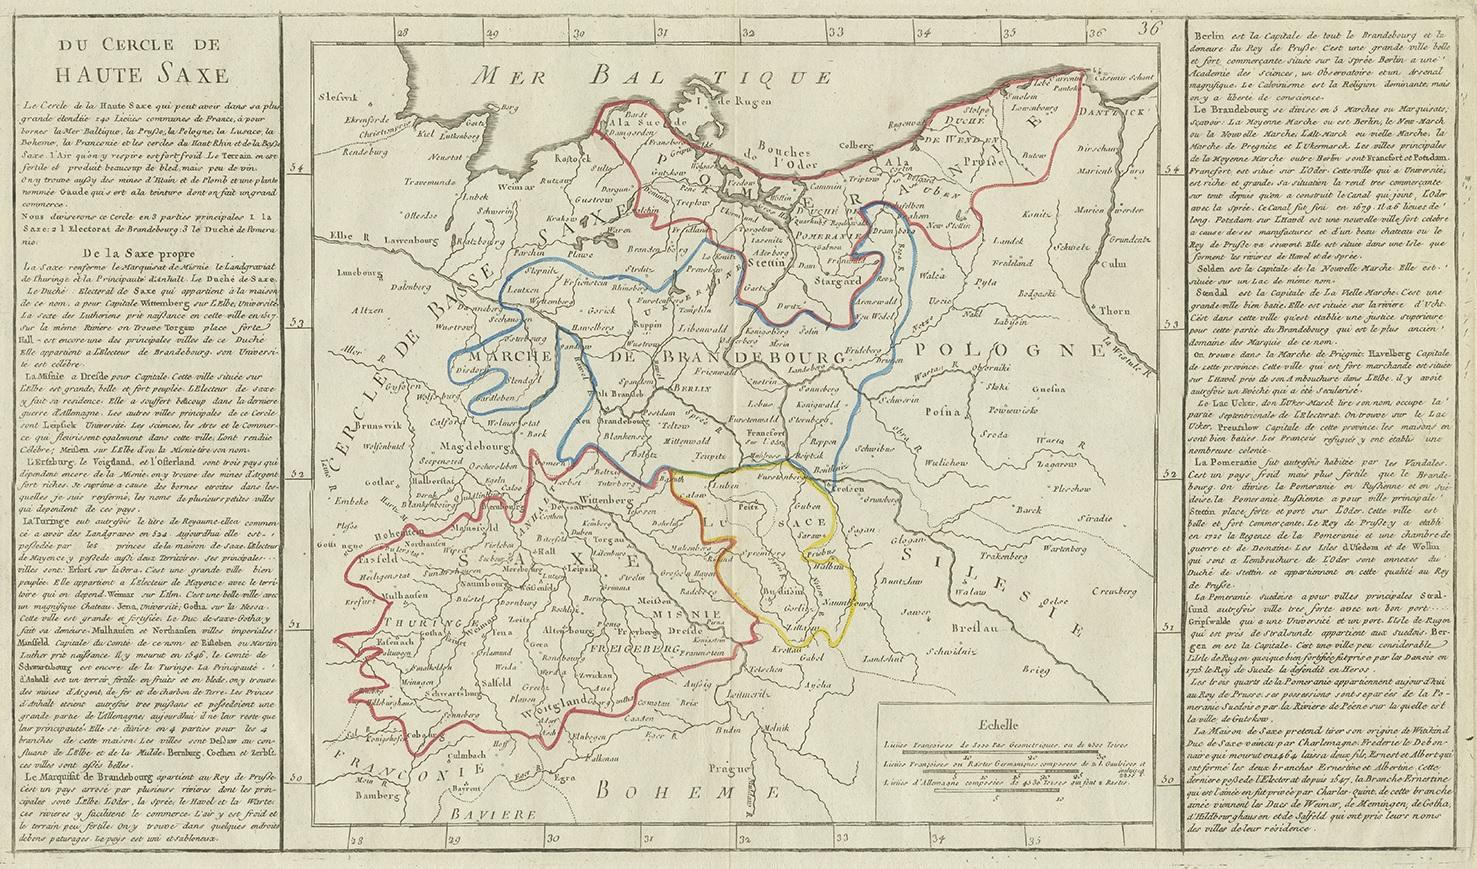 Antique map titled 'Du Cercle de Haute Saxe'. Antique map of Upper Saxony, Germany. Originates from 'Geographie moderne avec une introduction' by J.B.L. Clouet.